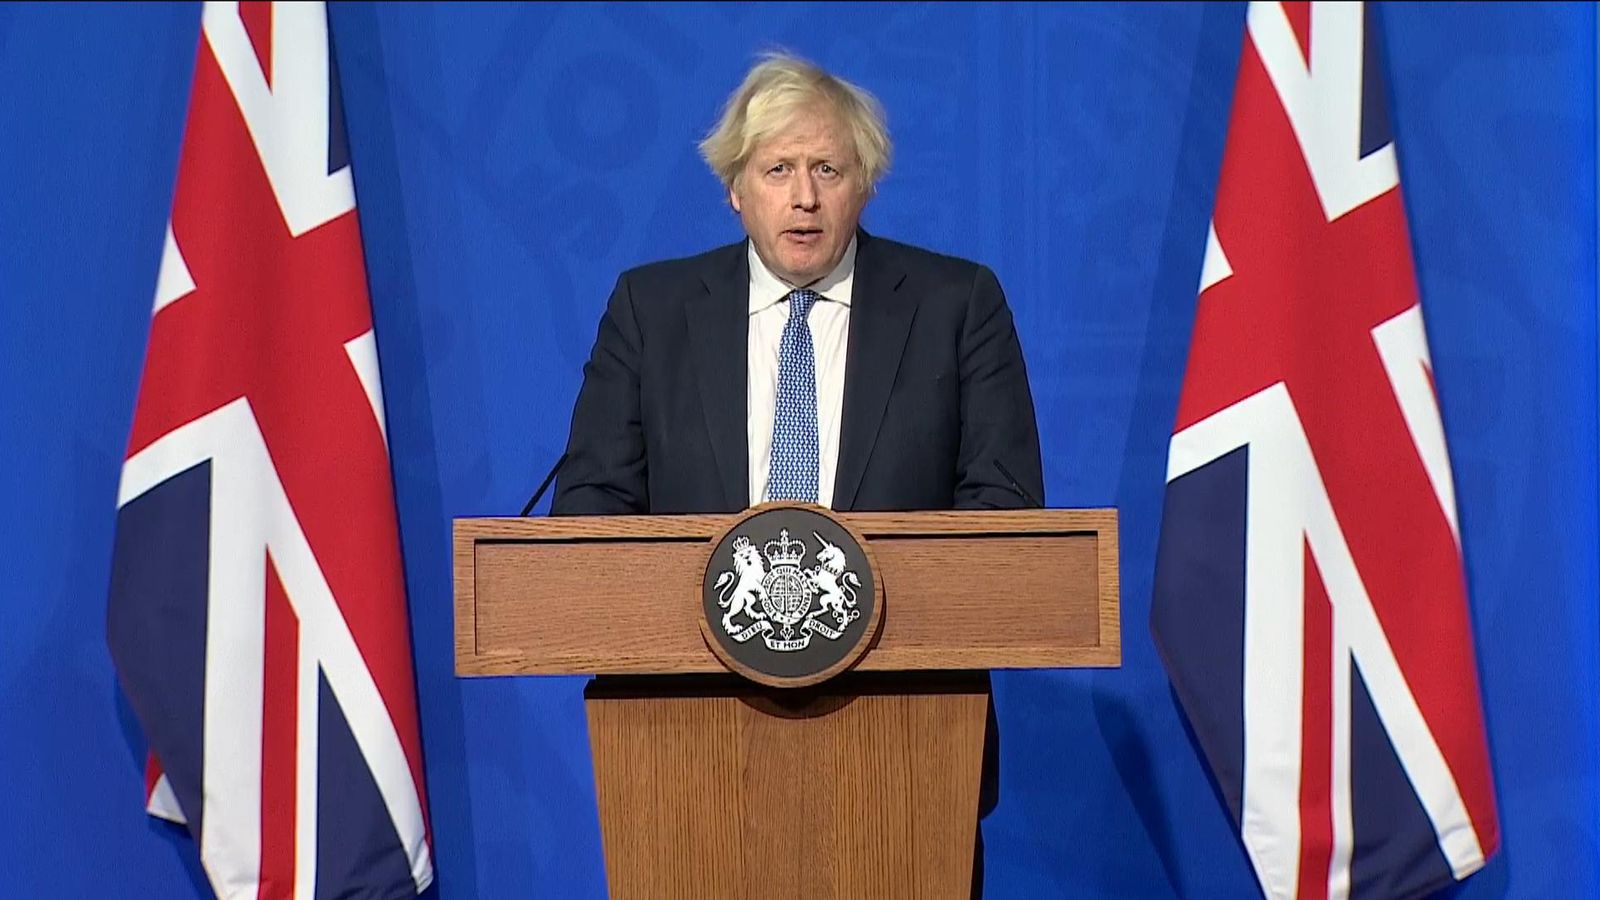 Správy o COVID naživo: Boris Johnson zaviedol nové obmedzenia, keď sa objavili údaje Omicron – kancelárka Allegra Stratton odstúpila |  Správy zo Spojeného kráľovstva